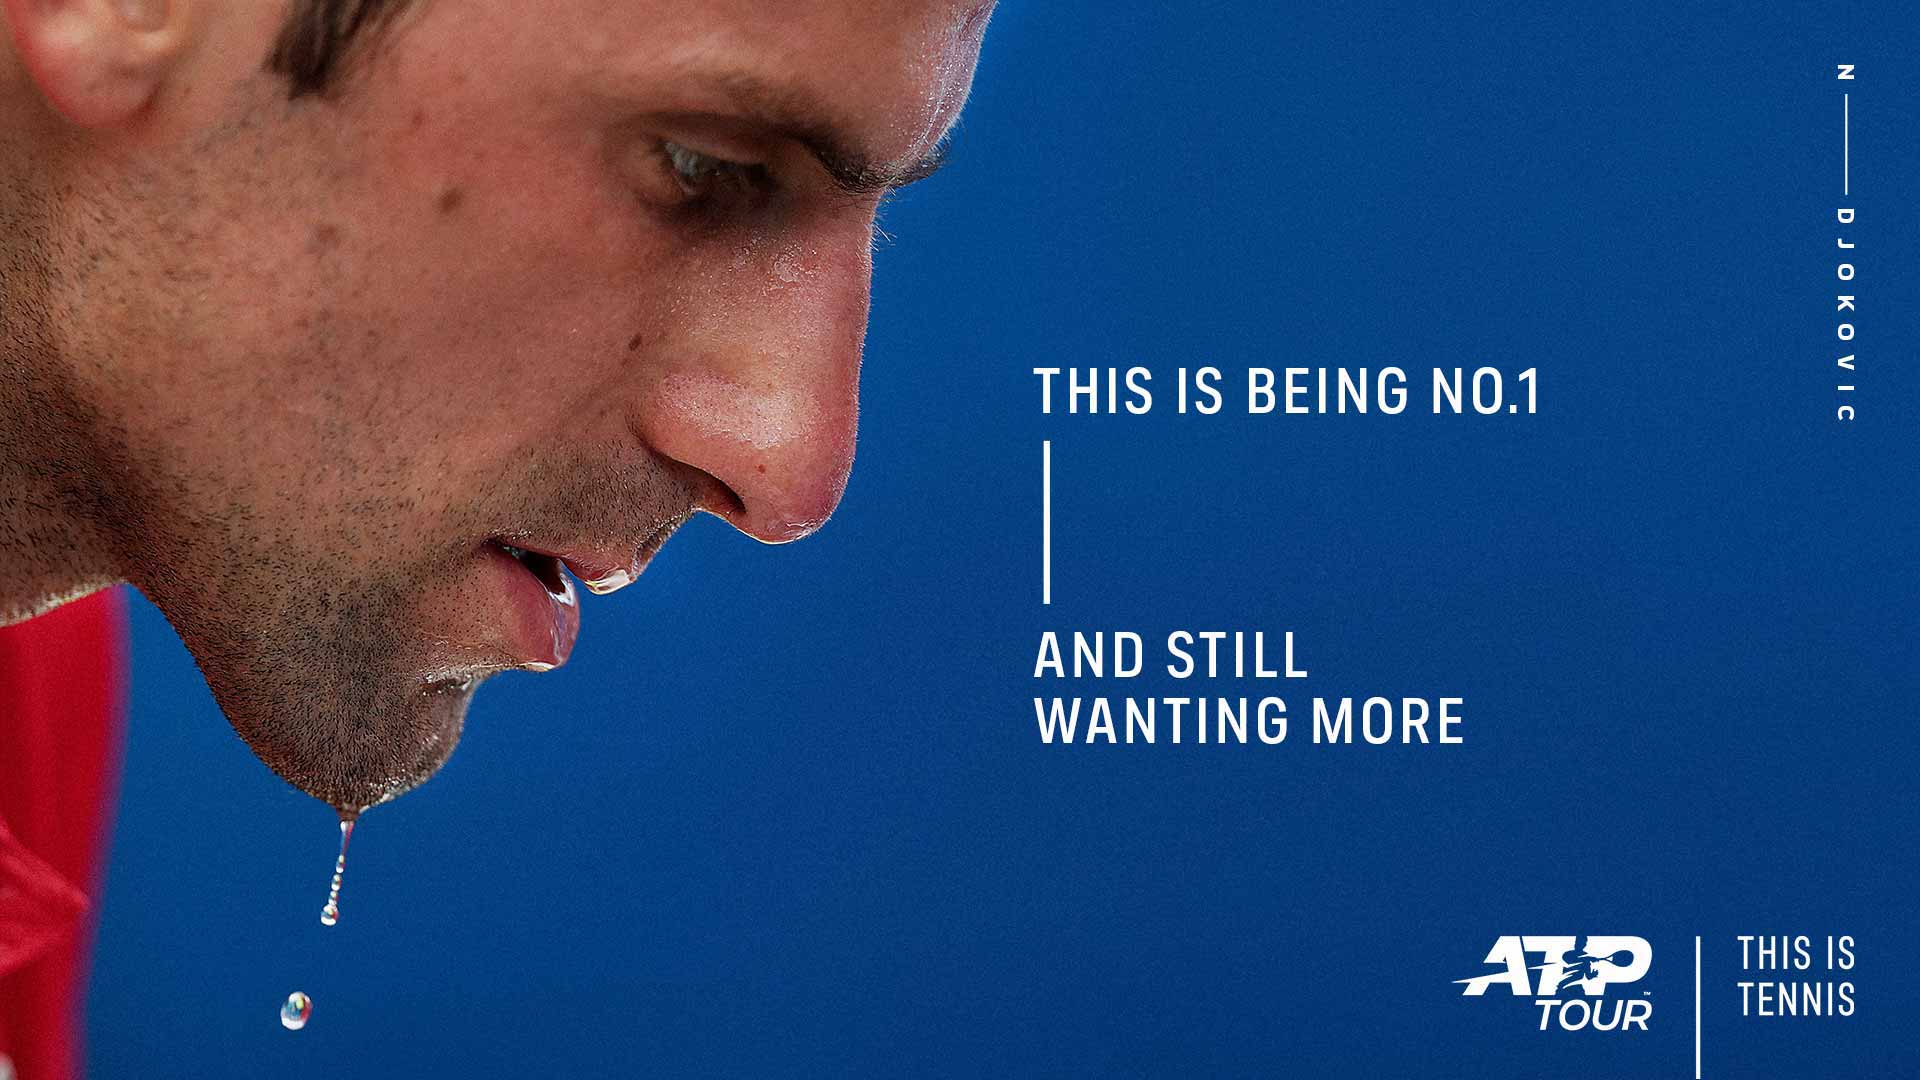 Мужской теннисный тур представляет новую рекламную кампанию (ВИДЕО)